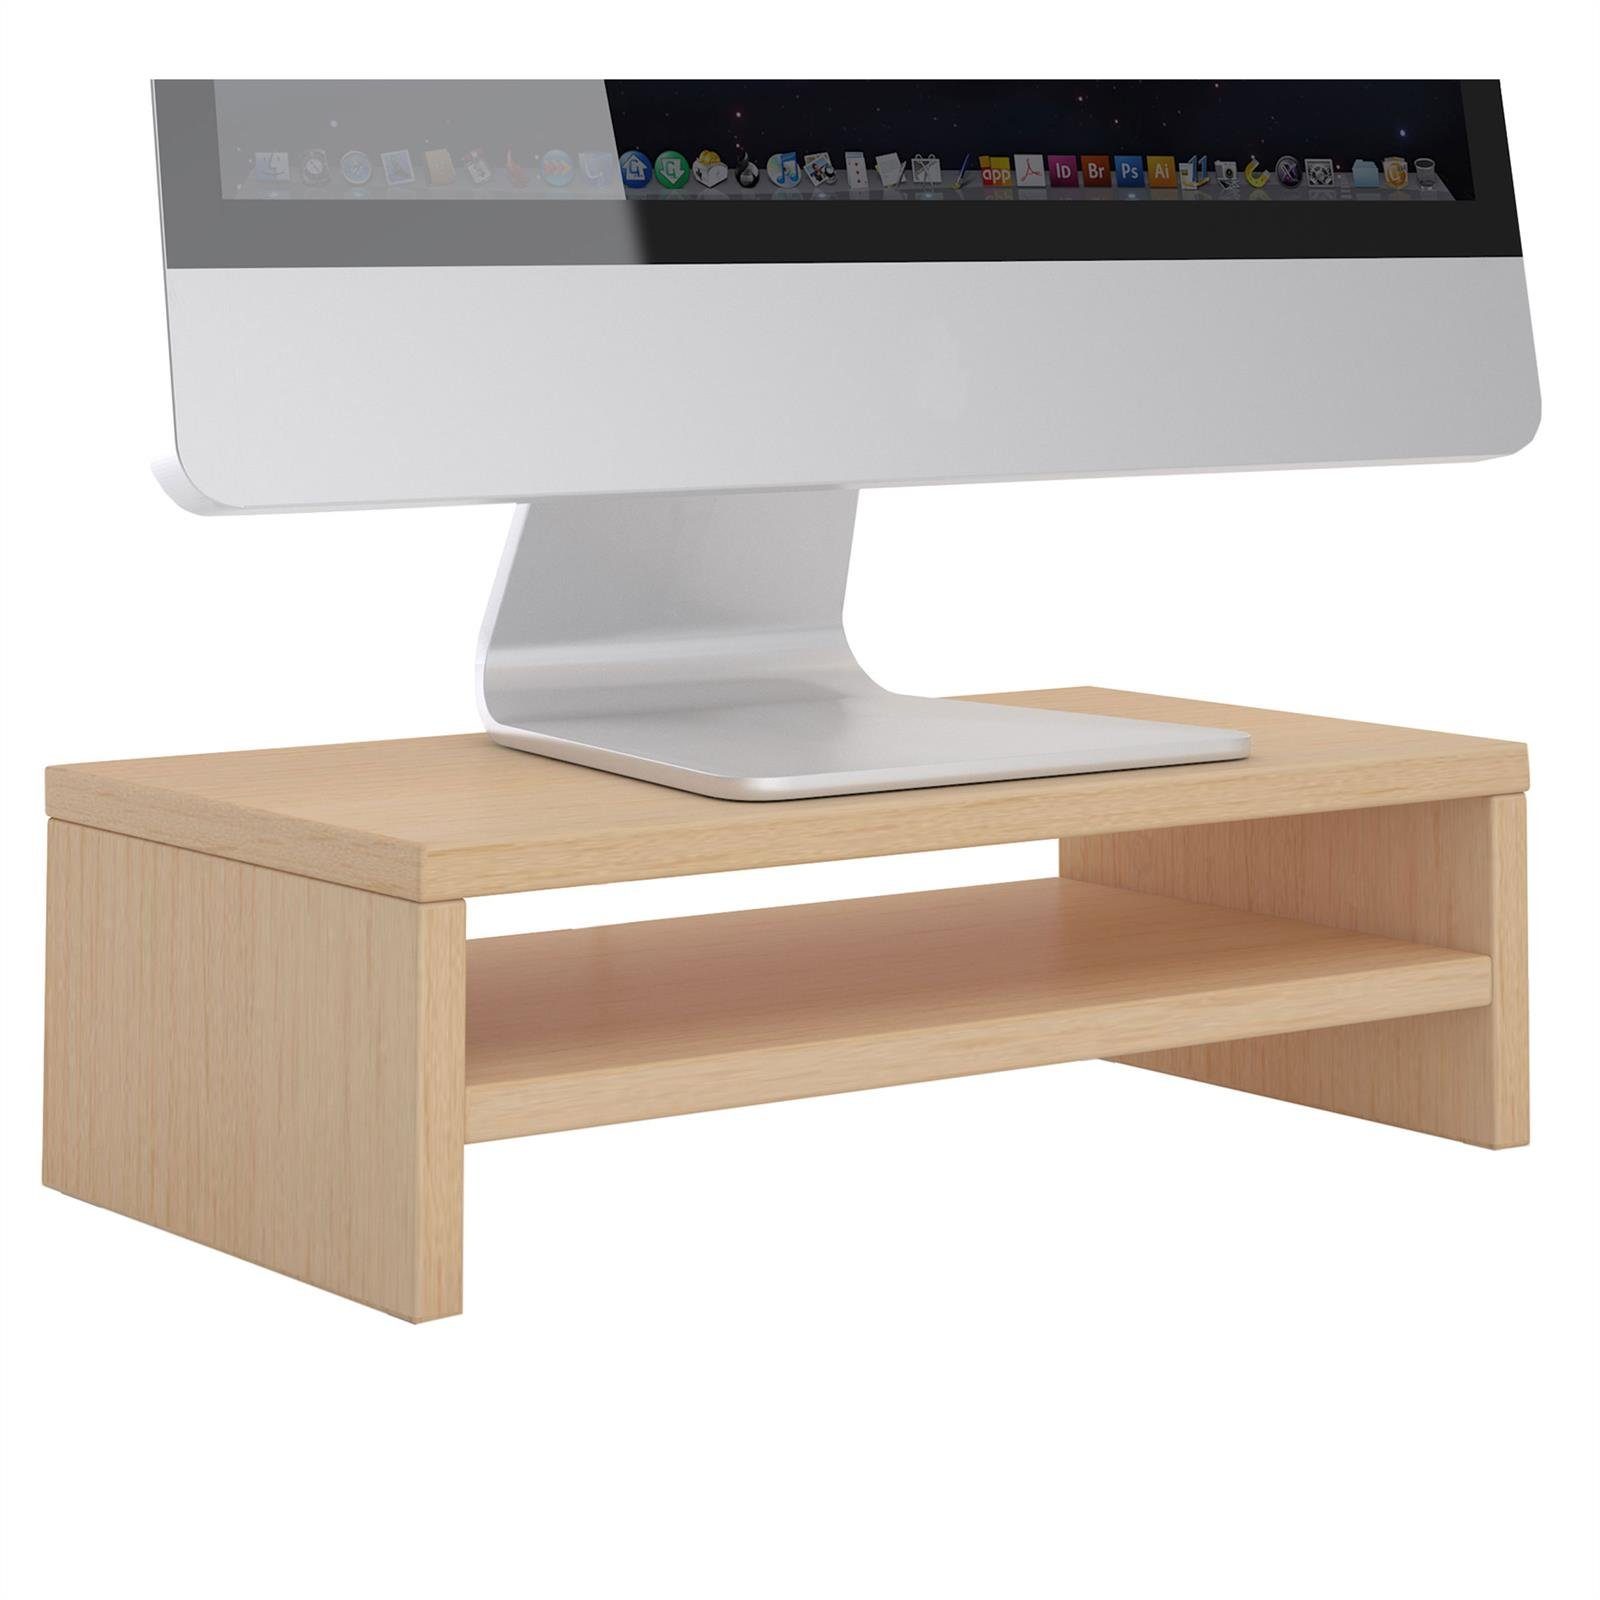 Neue beliebte Modelle CARO-Möbel Schreibtischaufsatz SUBIDA, Bildschirmaufsatz Ablagefach Monitorständer Monitorerhöhung inkl. buchefarben